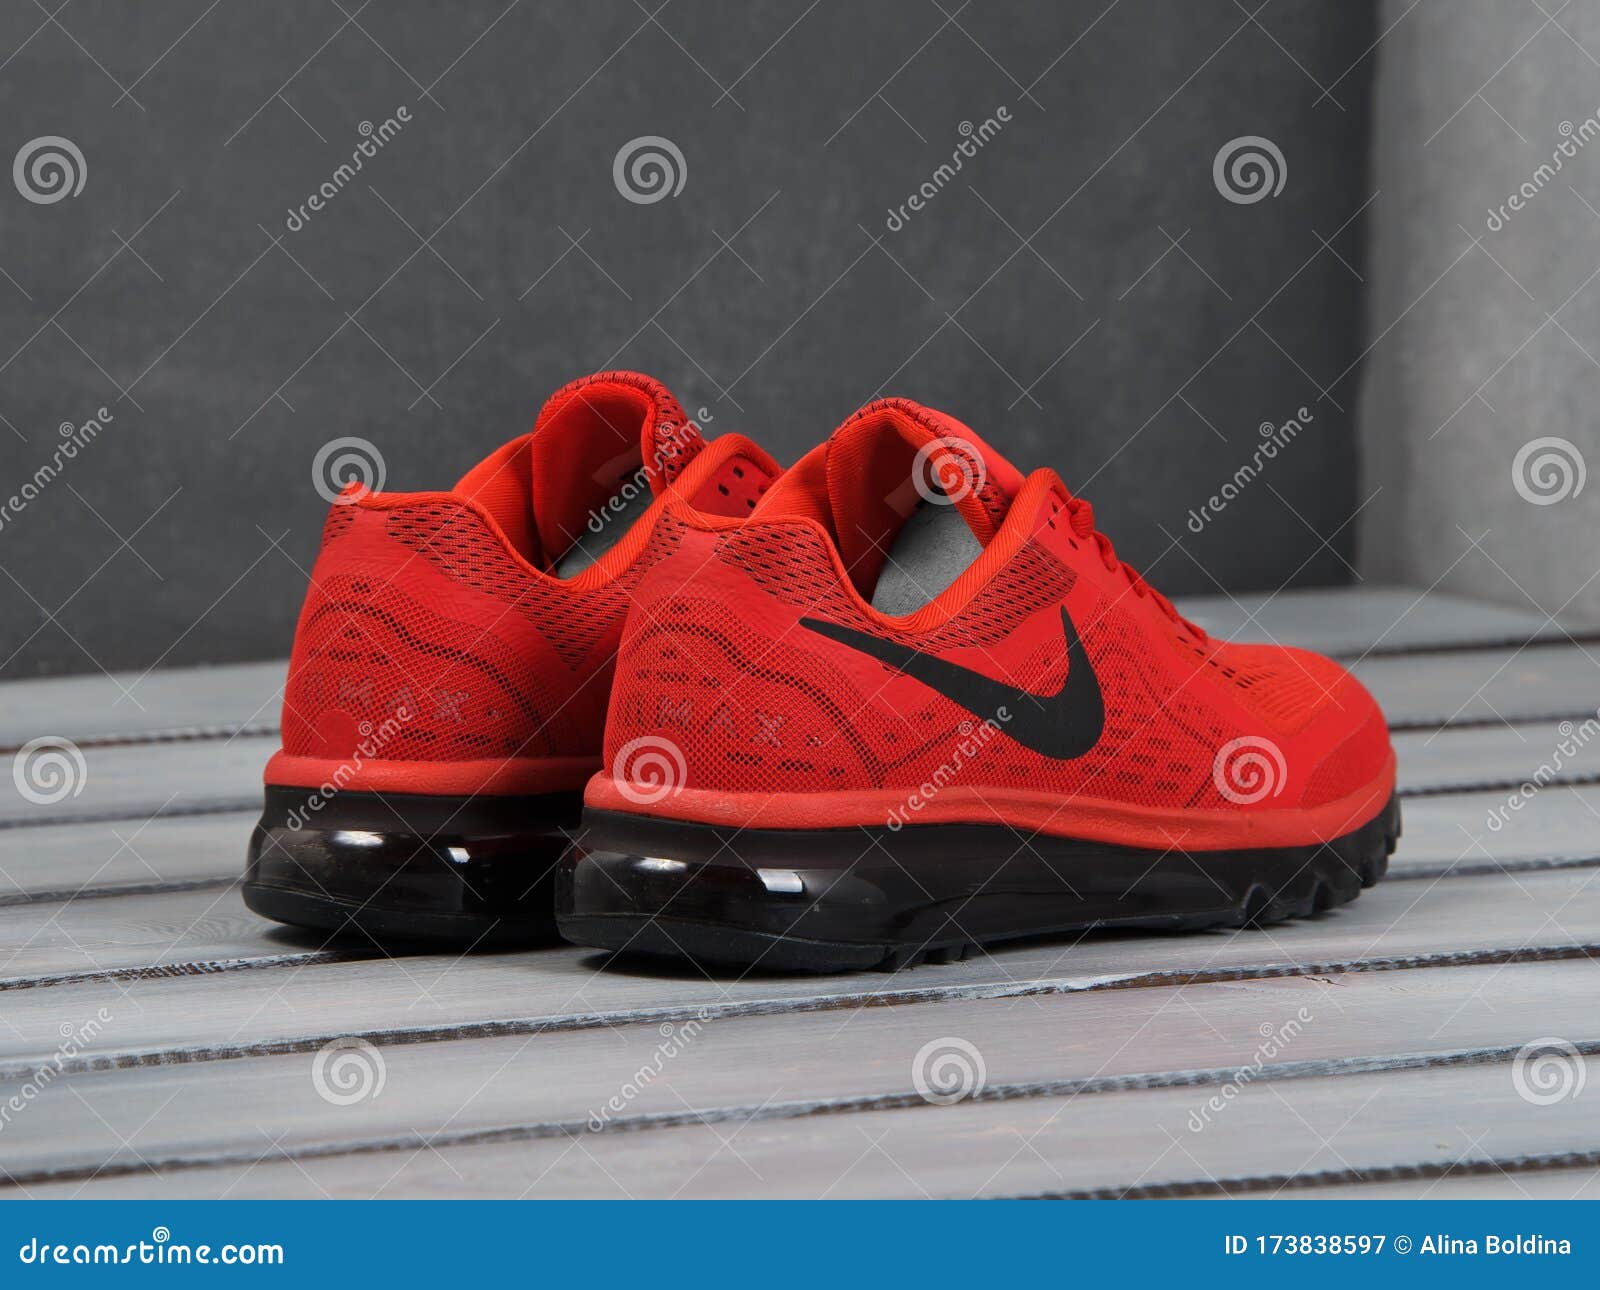 Hechting beloning analyse Rode Nike Air Max. 2014 Loopschoenen Niakers. Krasnoyarsk Rusland 15  Januari 2018 Redactionele Fotografie - Image of joggen, toevallig: 173838597